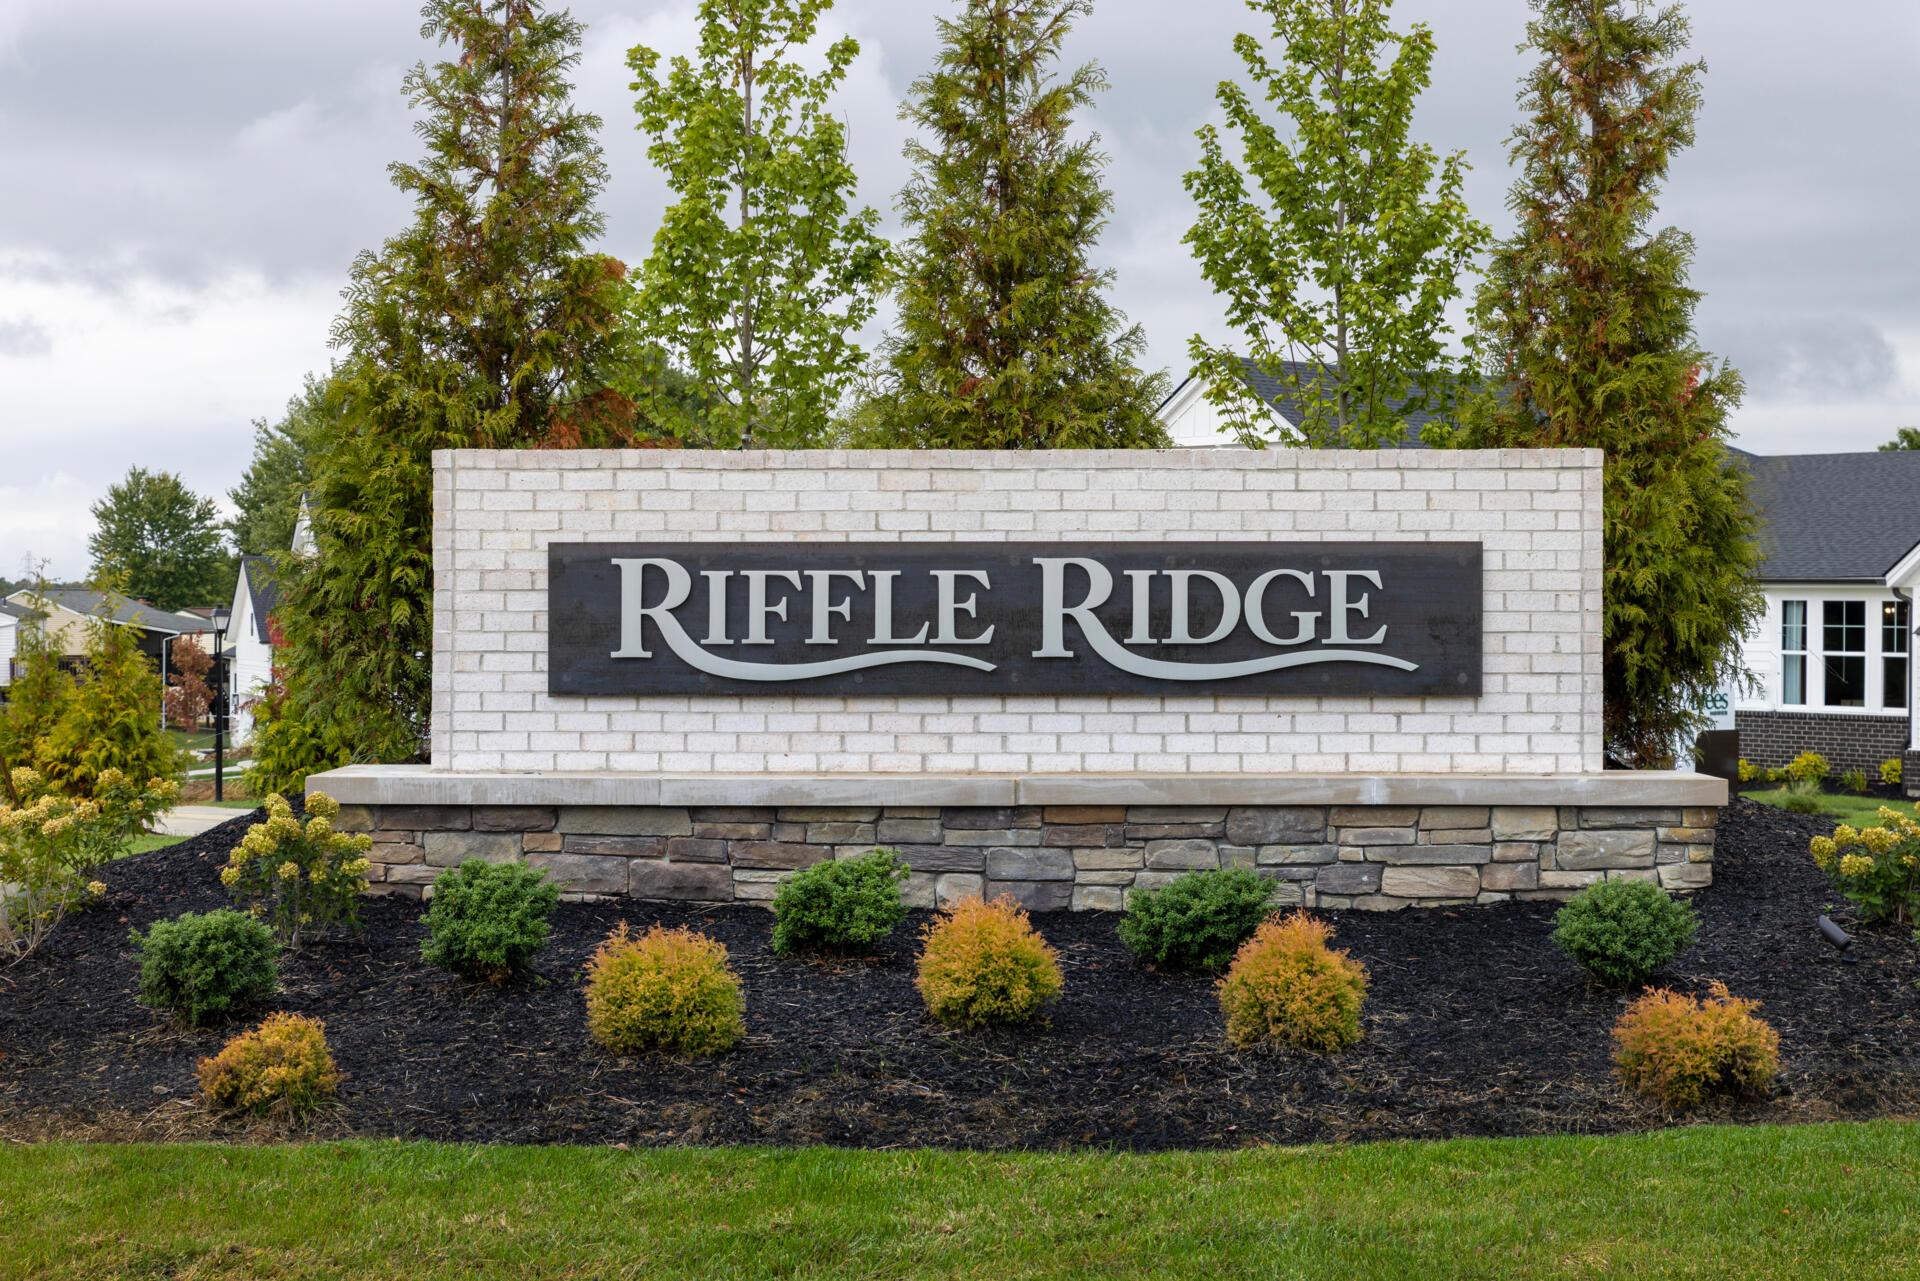 The Riffle Ridge Community Entrance